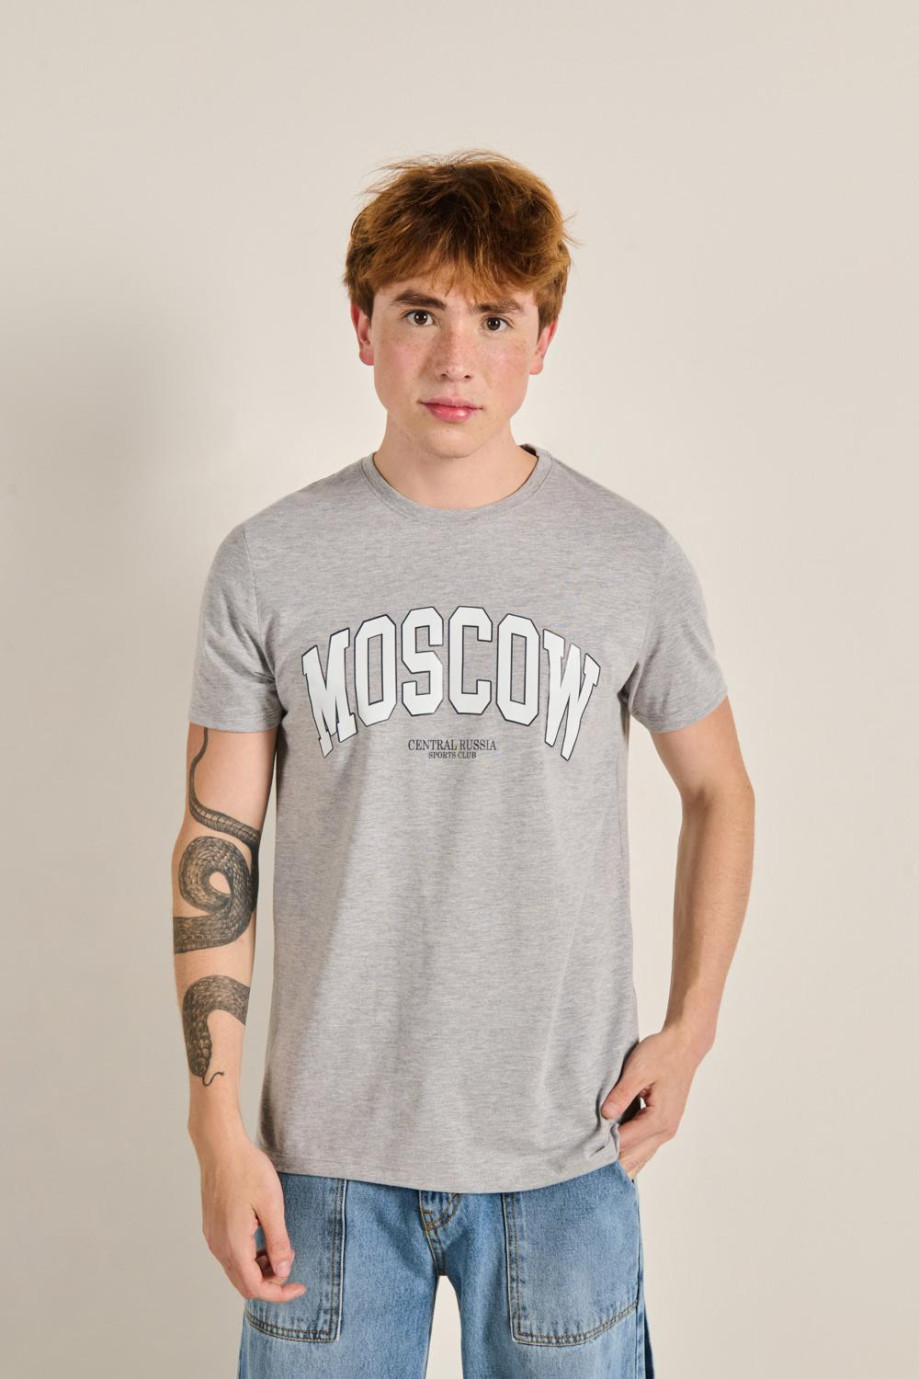 Camiseta unicolor con manga corta y diseño college de Moscow